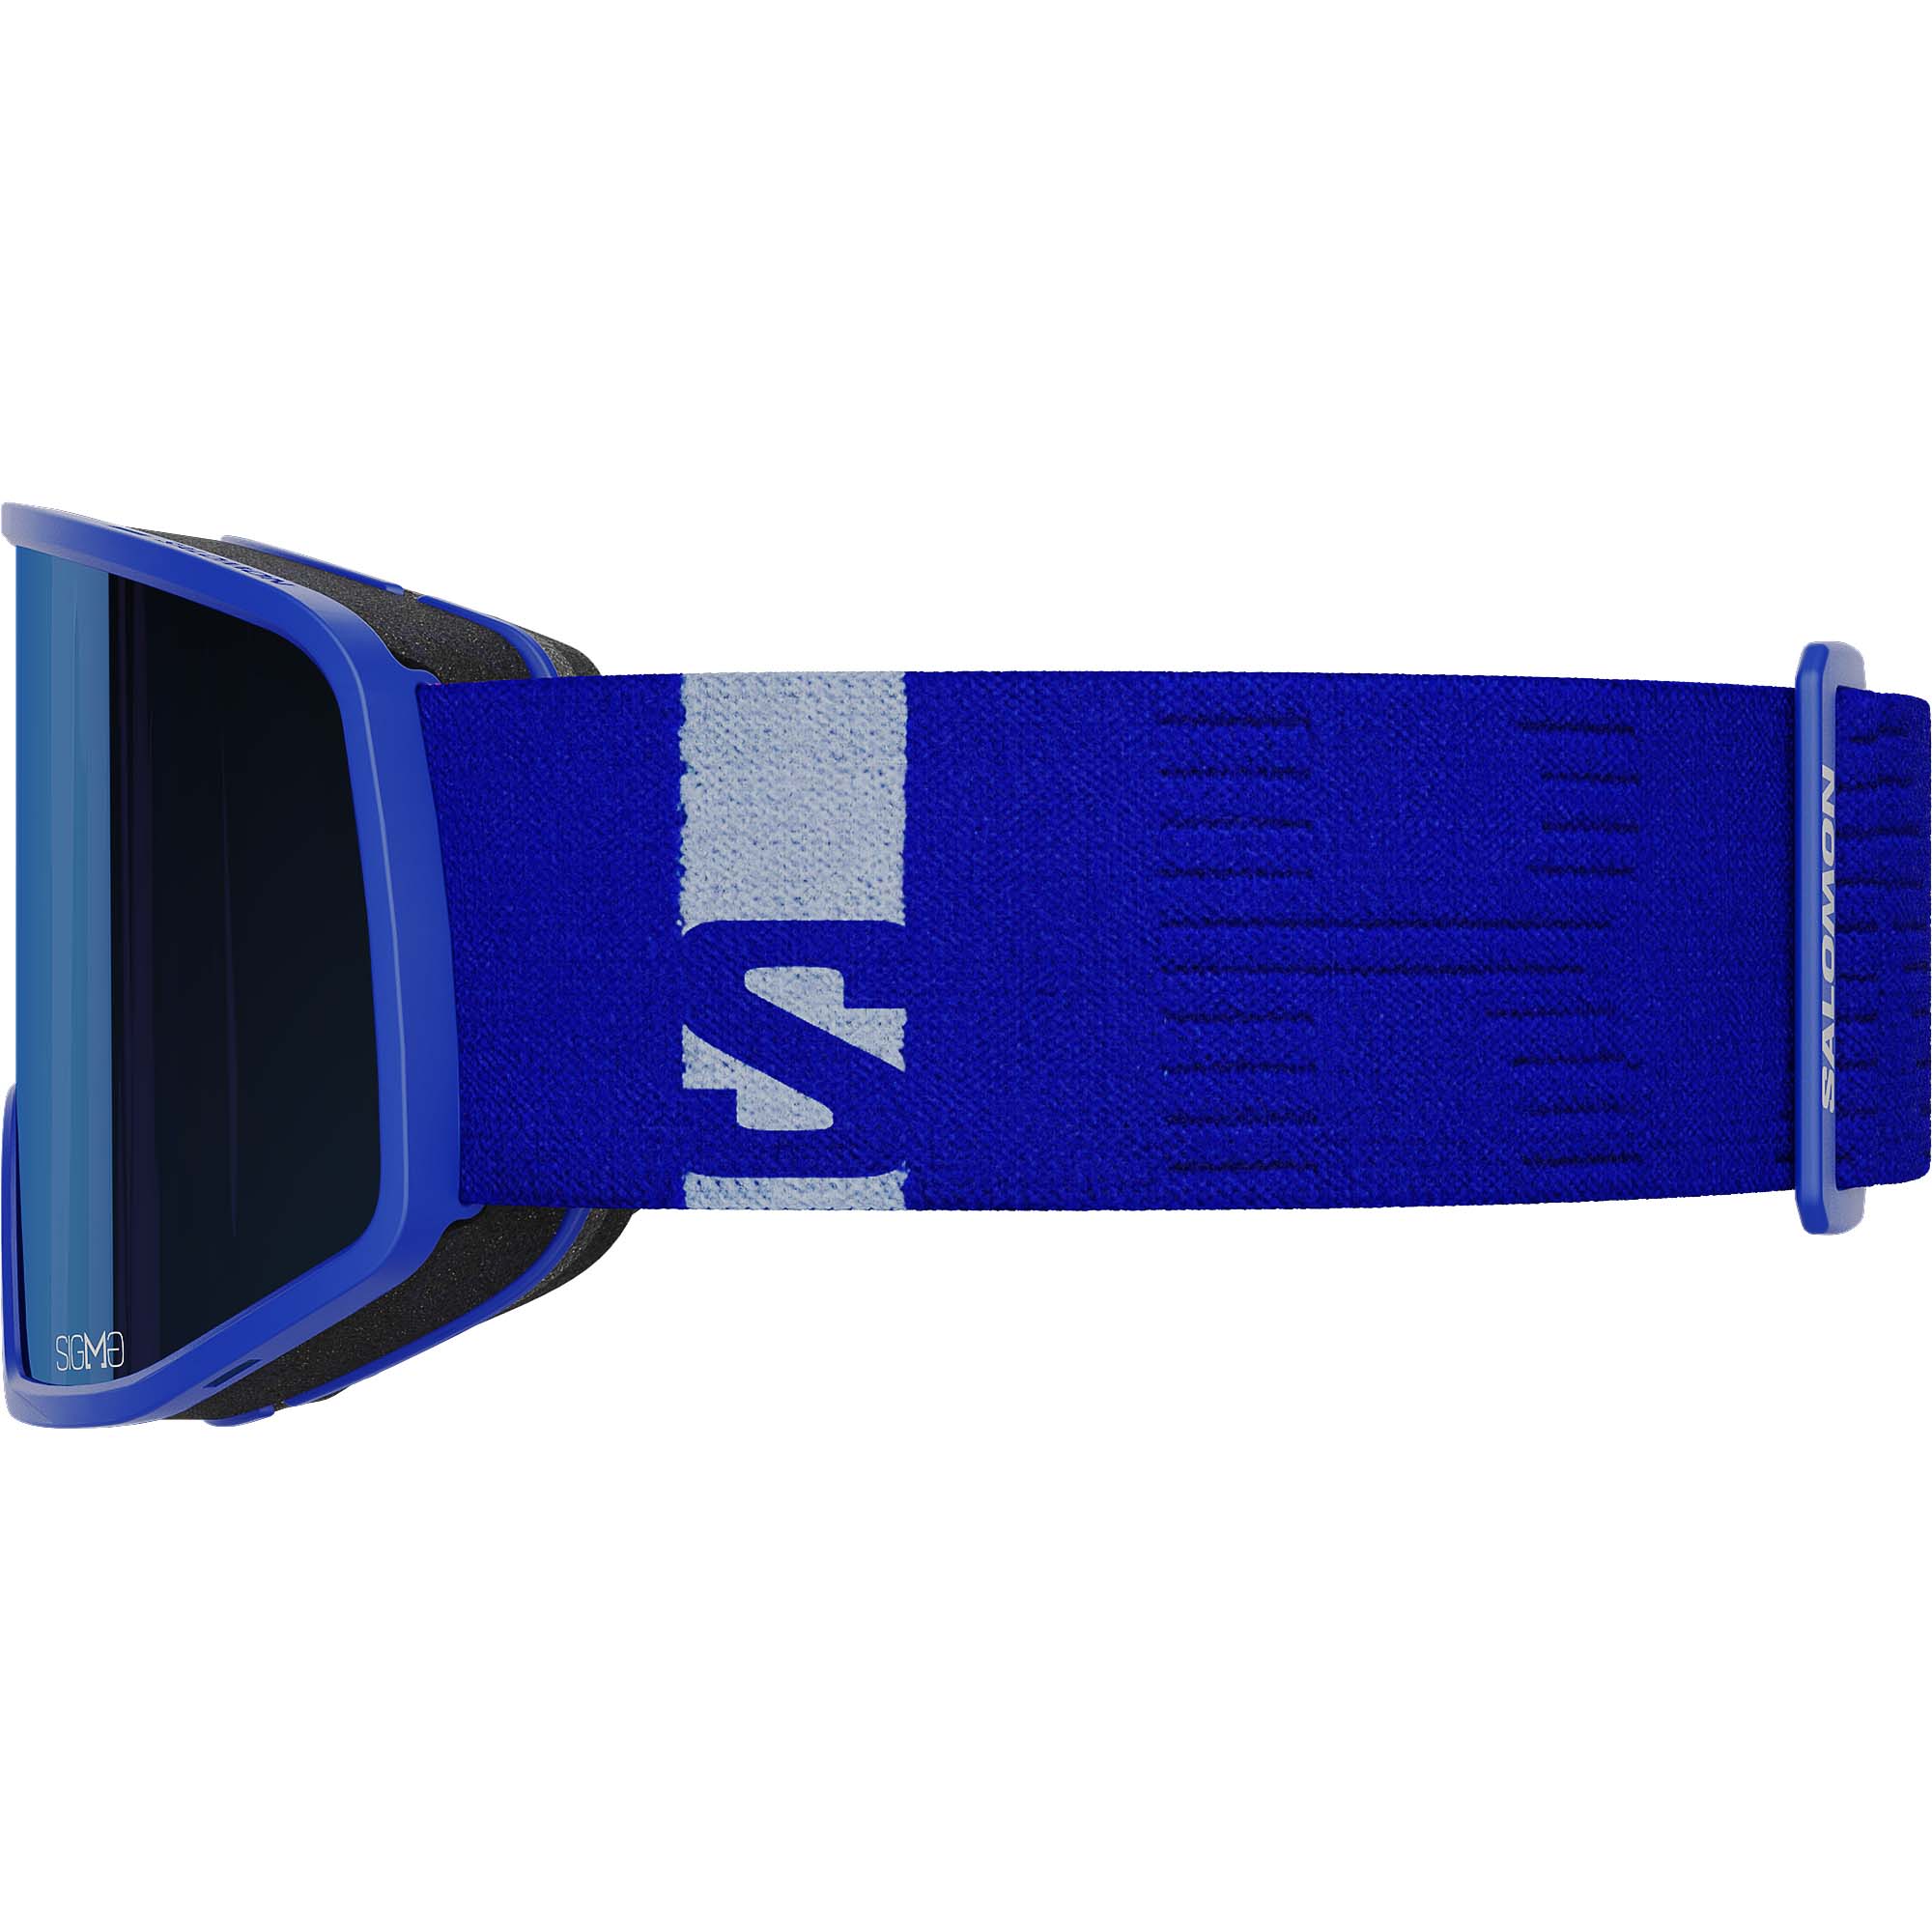 Salomon Sentry Pro Sigma Snowboard/Ski Goggles